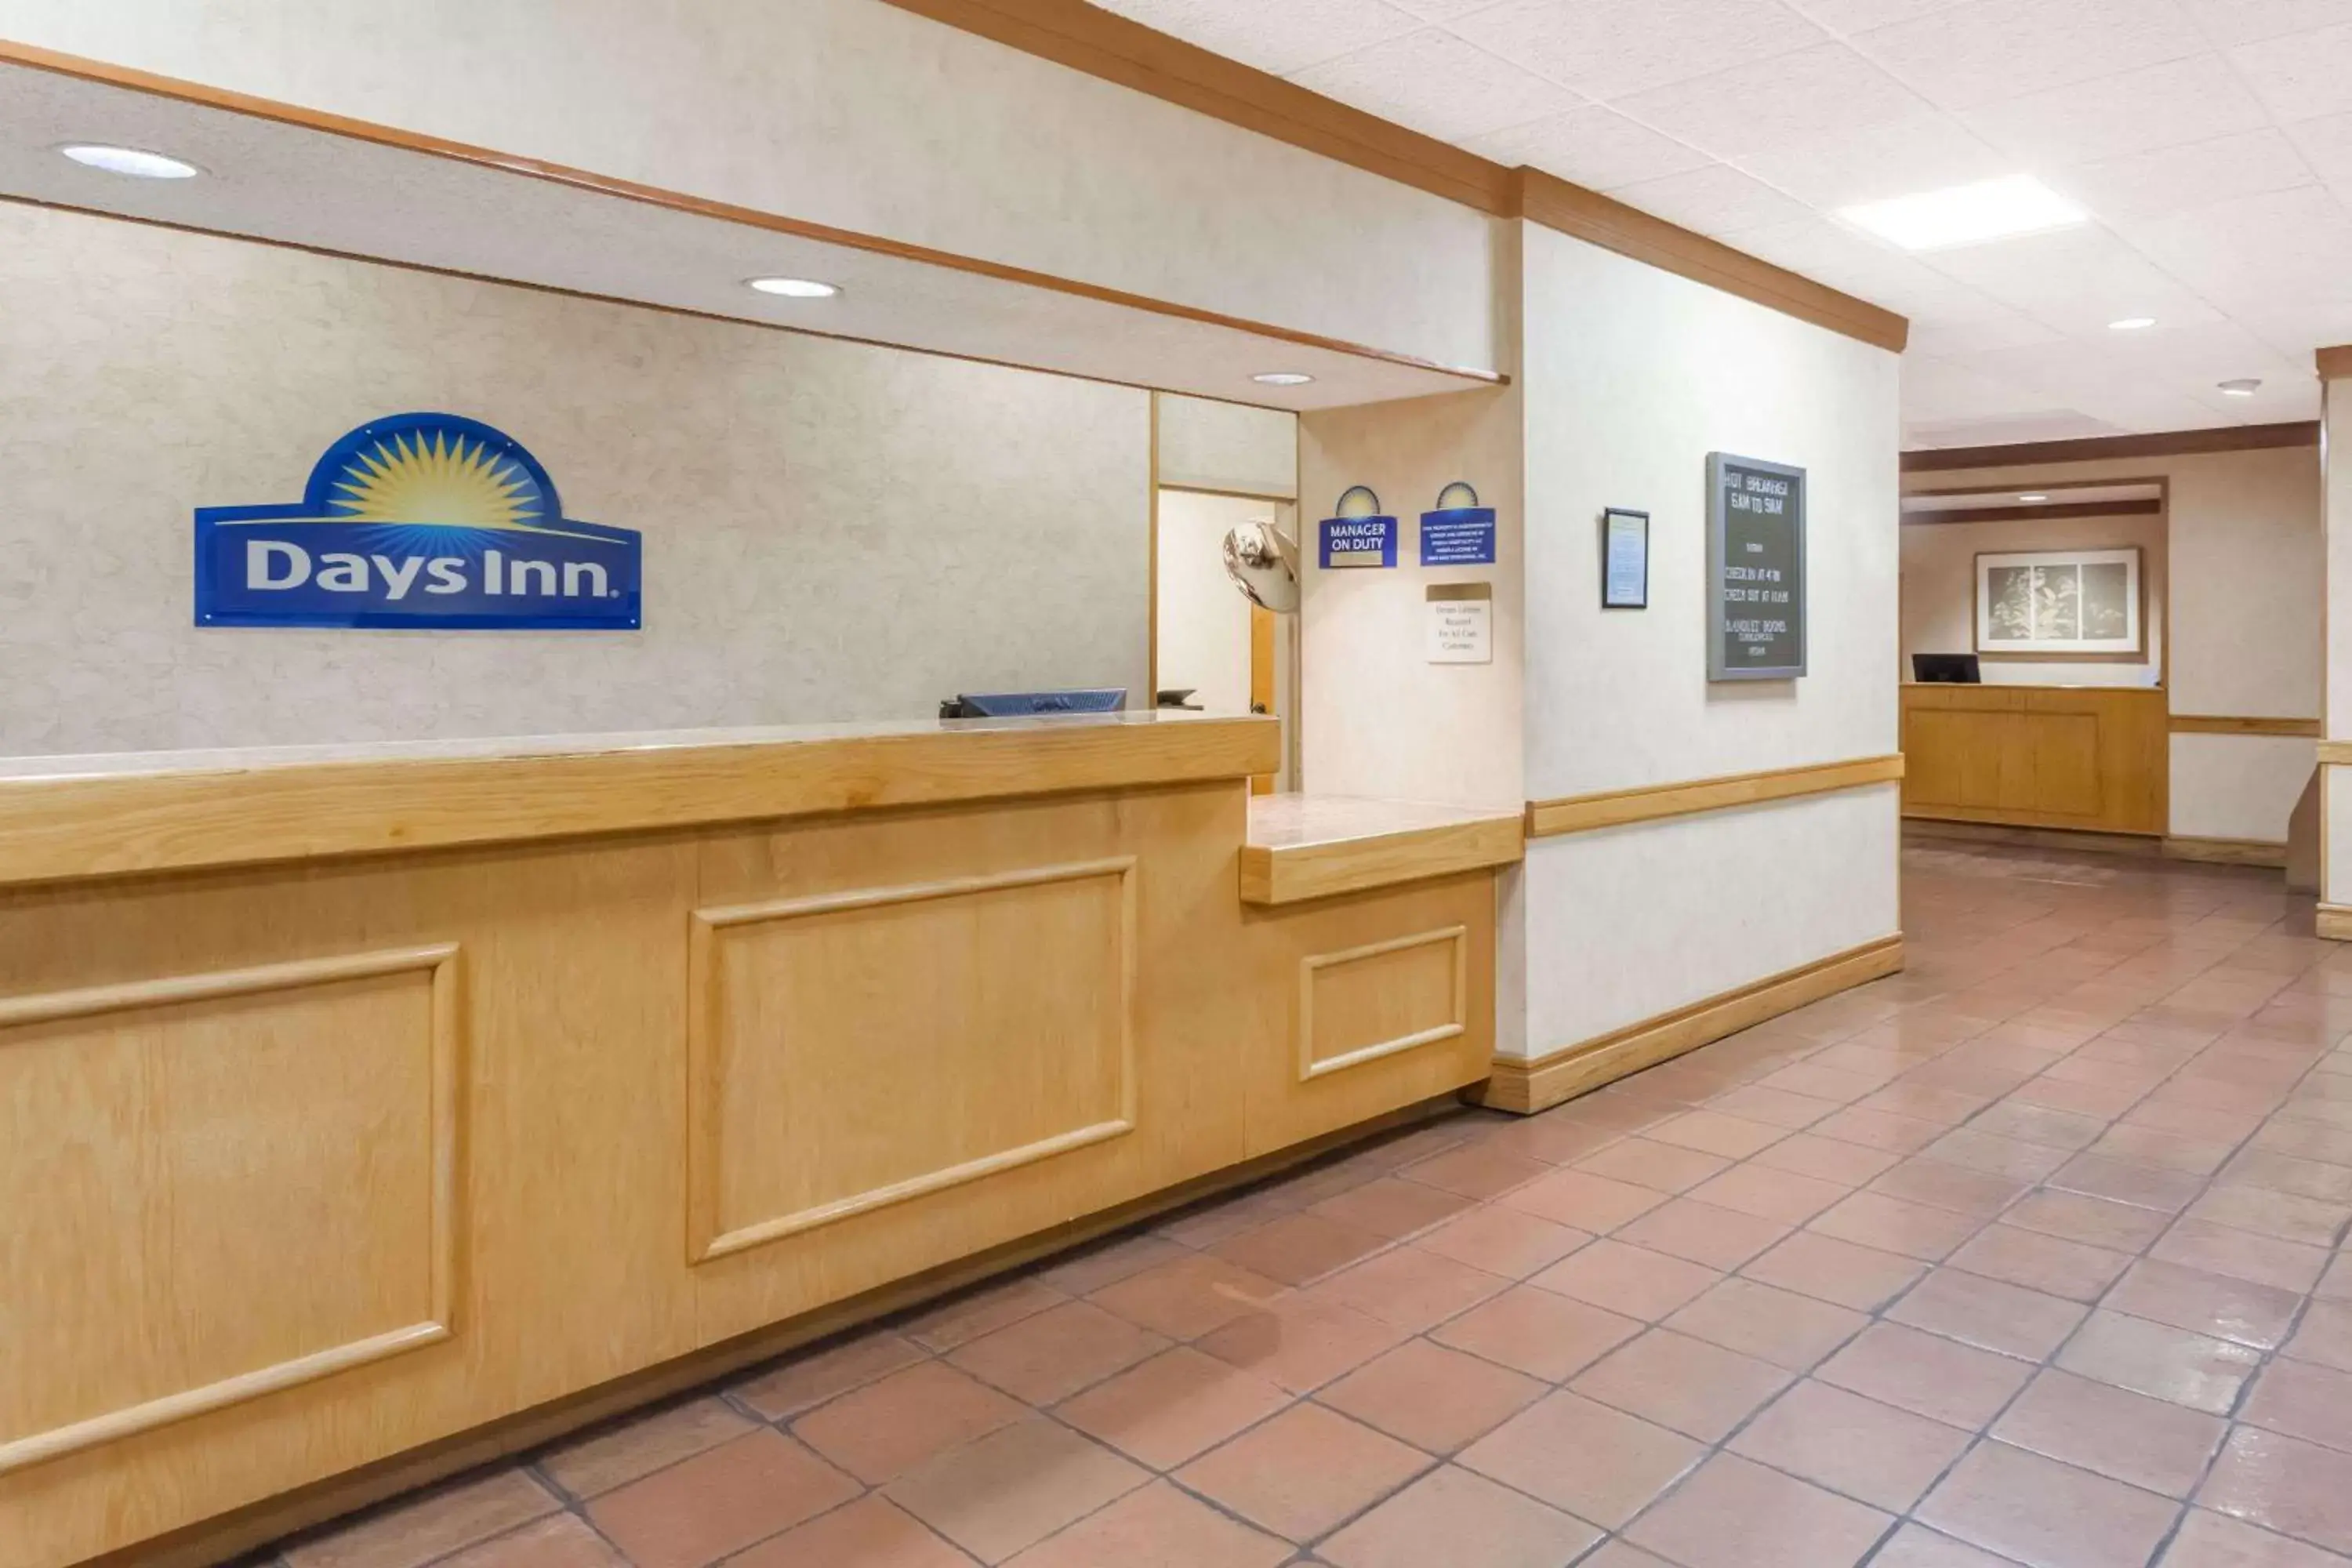 Lobby or reception, Lobby/Reception in Days Inn by Wyndham Seguin TX